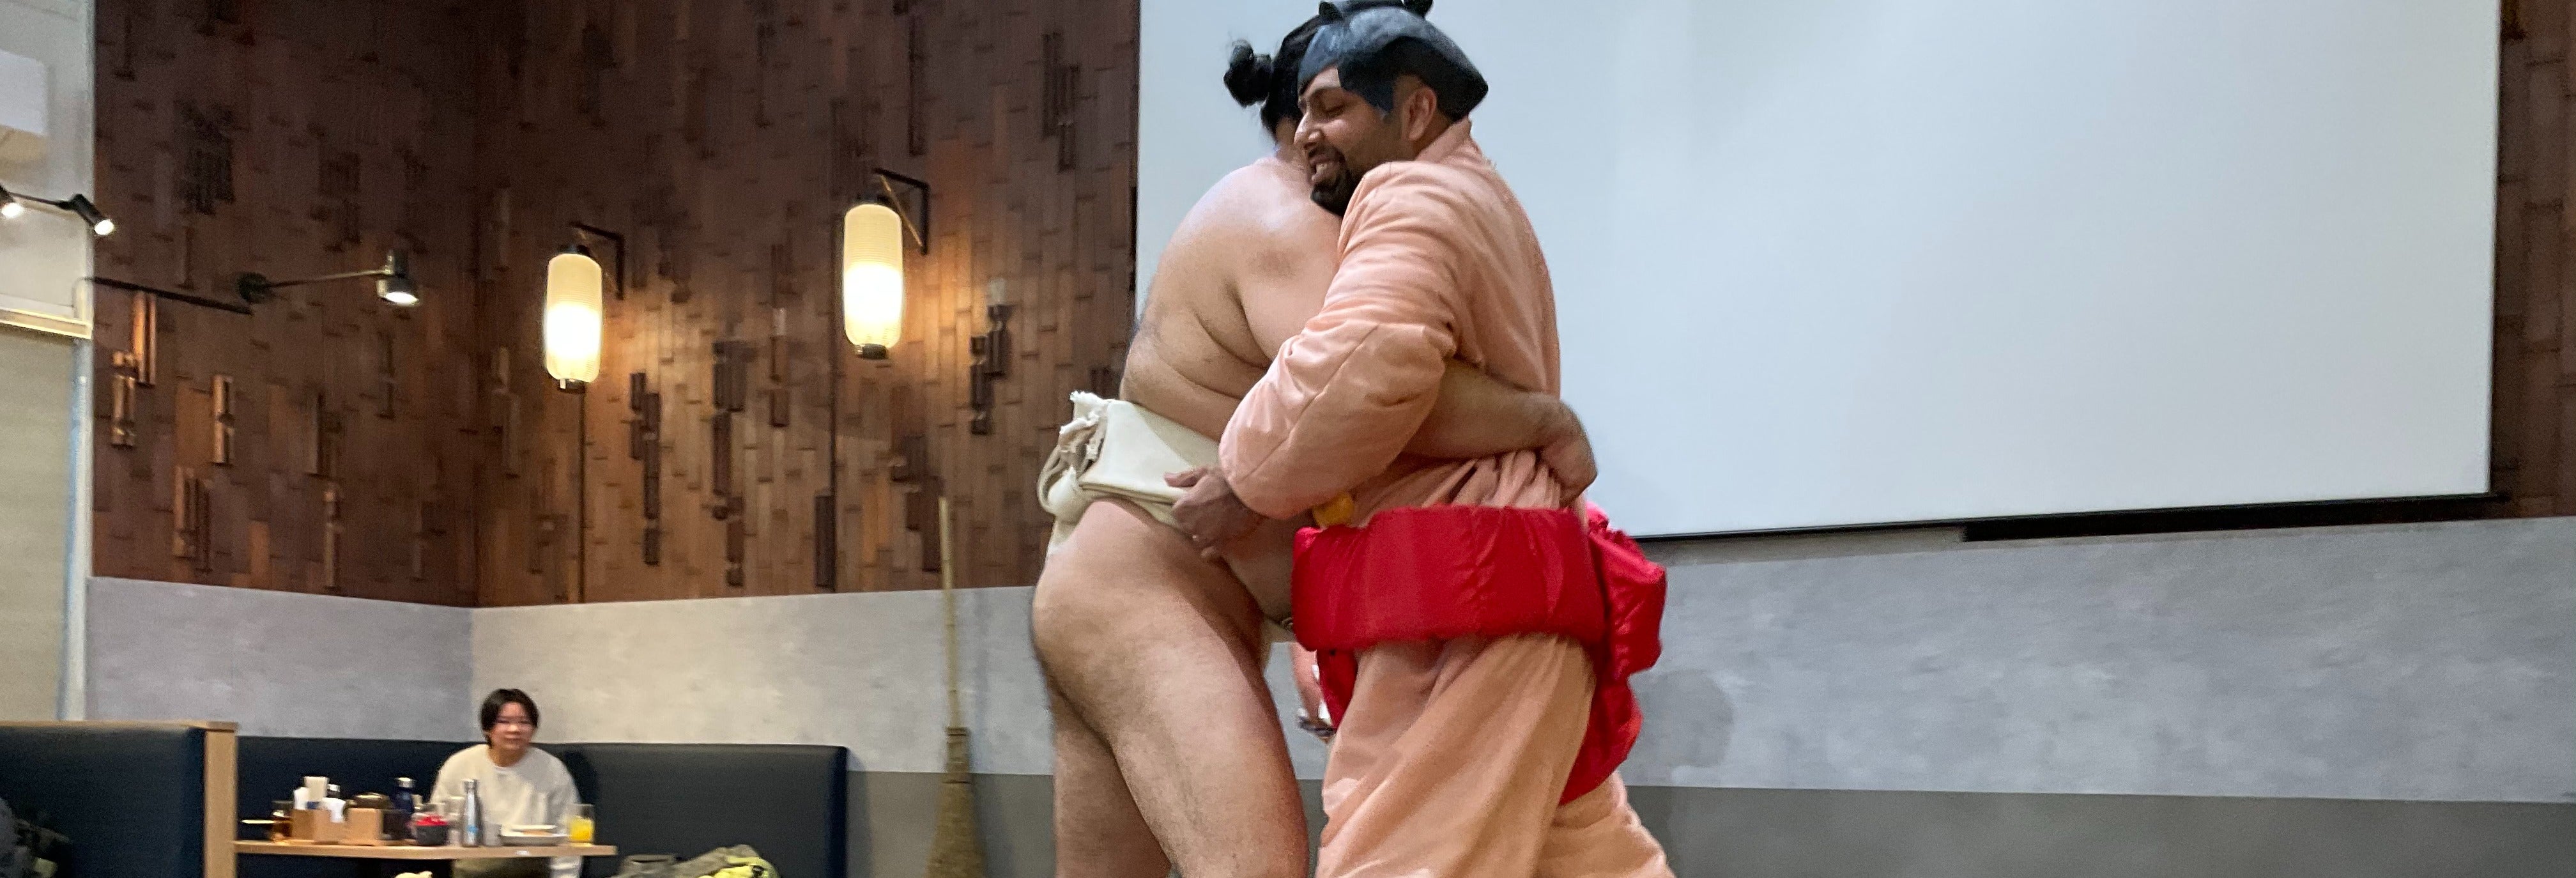 Ingresso para um treinamento de sumô